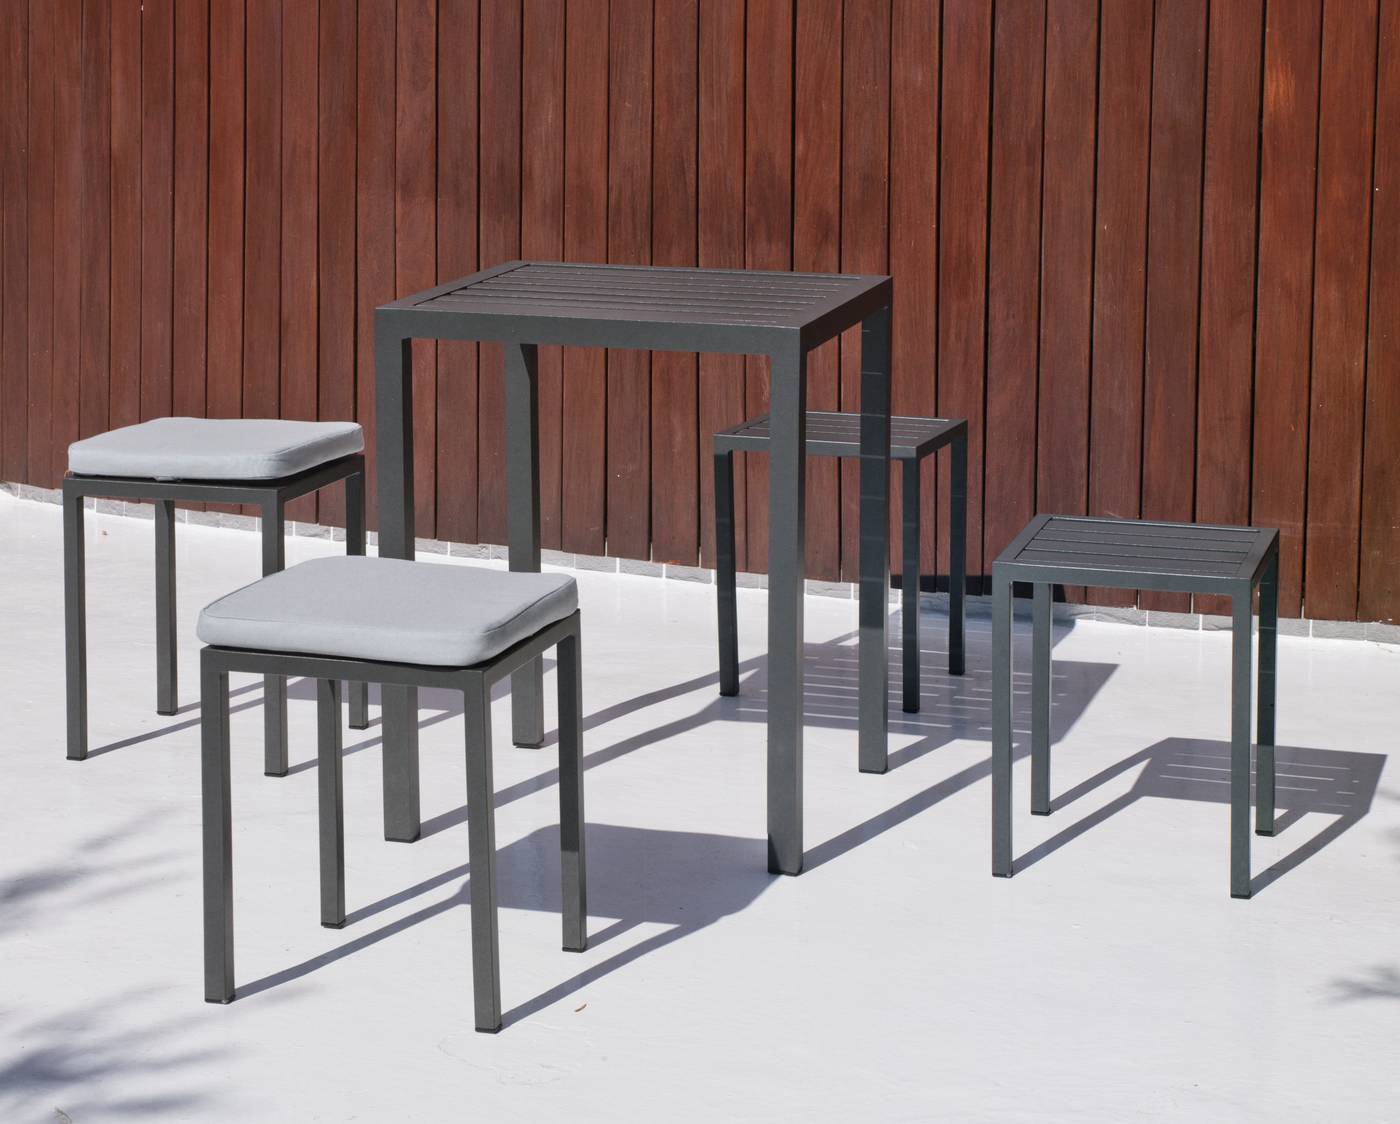 Taburete Aluminio Melea - Taburete comedor para jardín o terraza. Estructura y asiento de aluminio color blanco, plata, bronce o antracita.